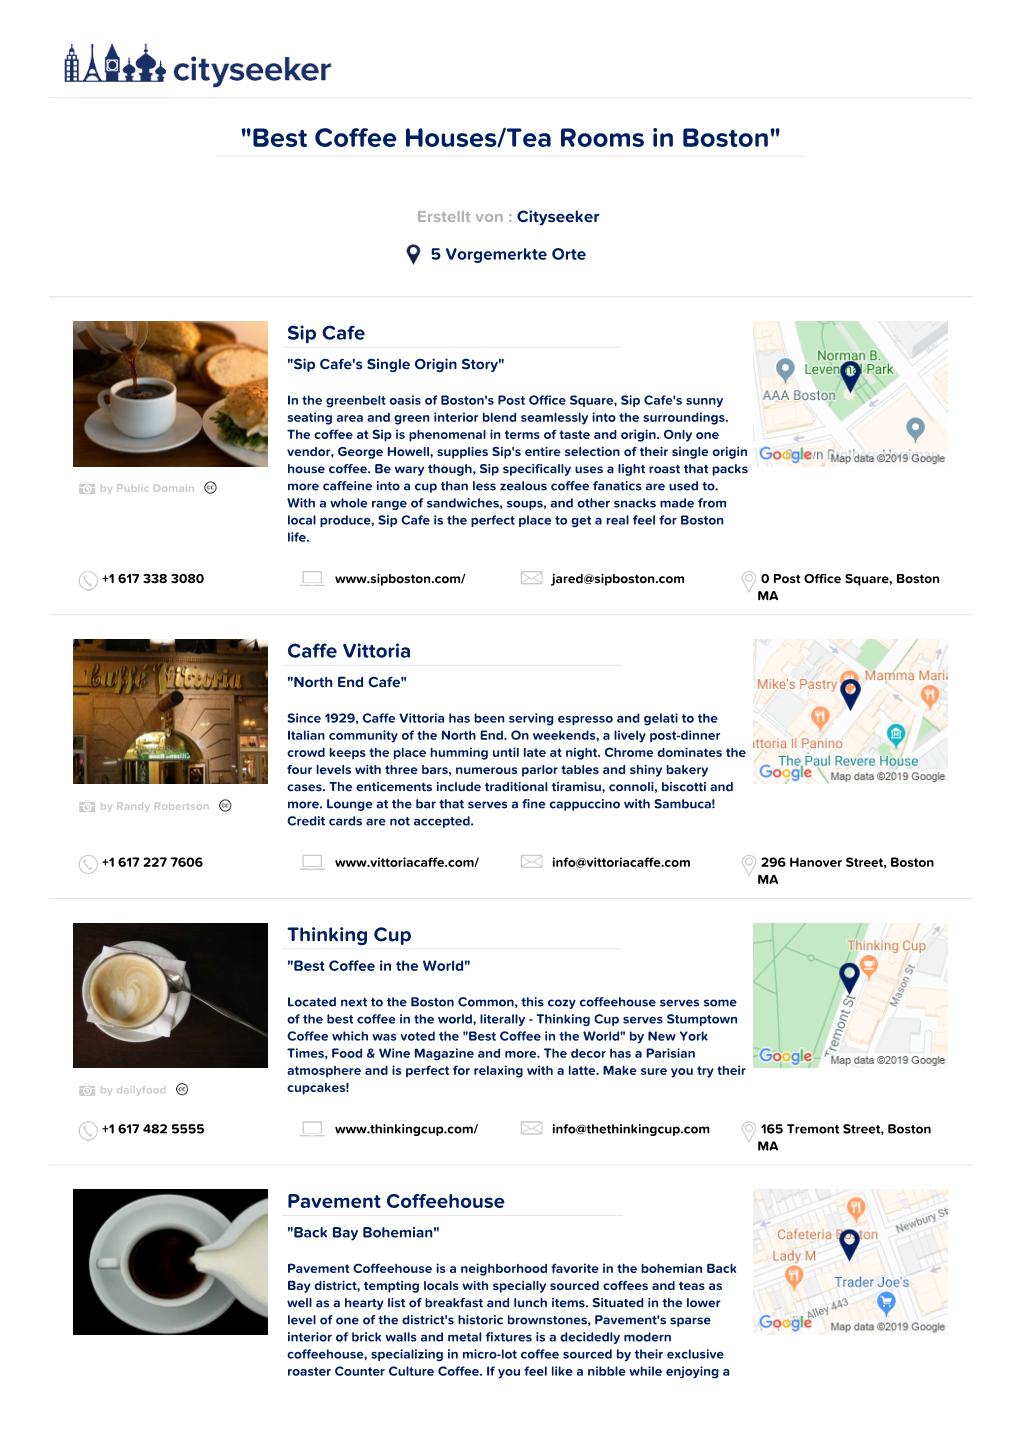 Best Coffee Houses/Tea Rooms in Boston"